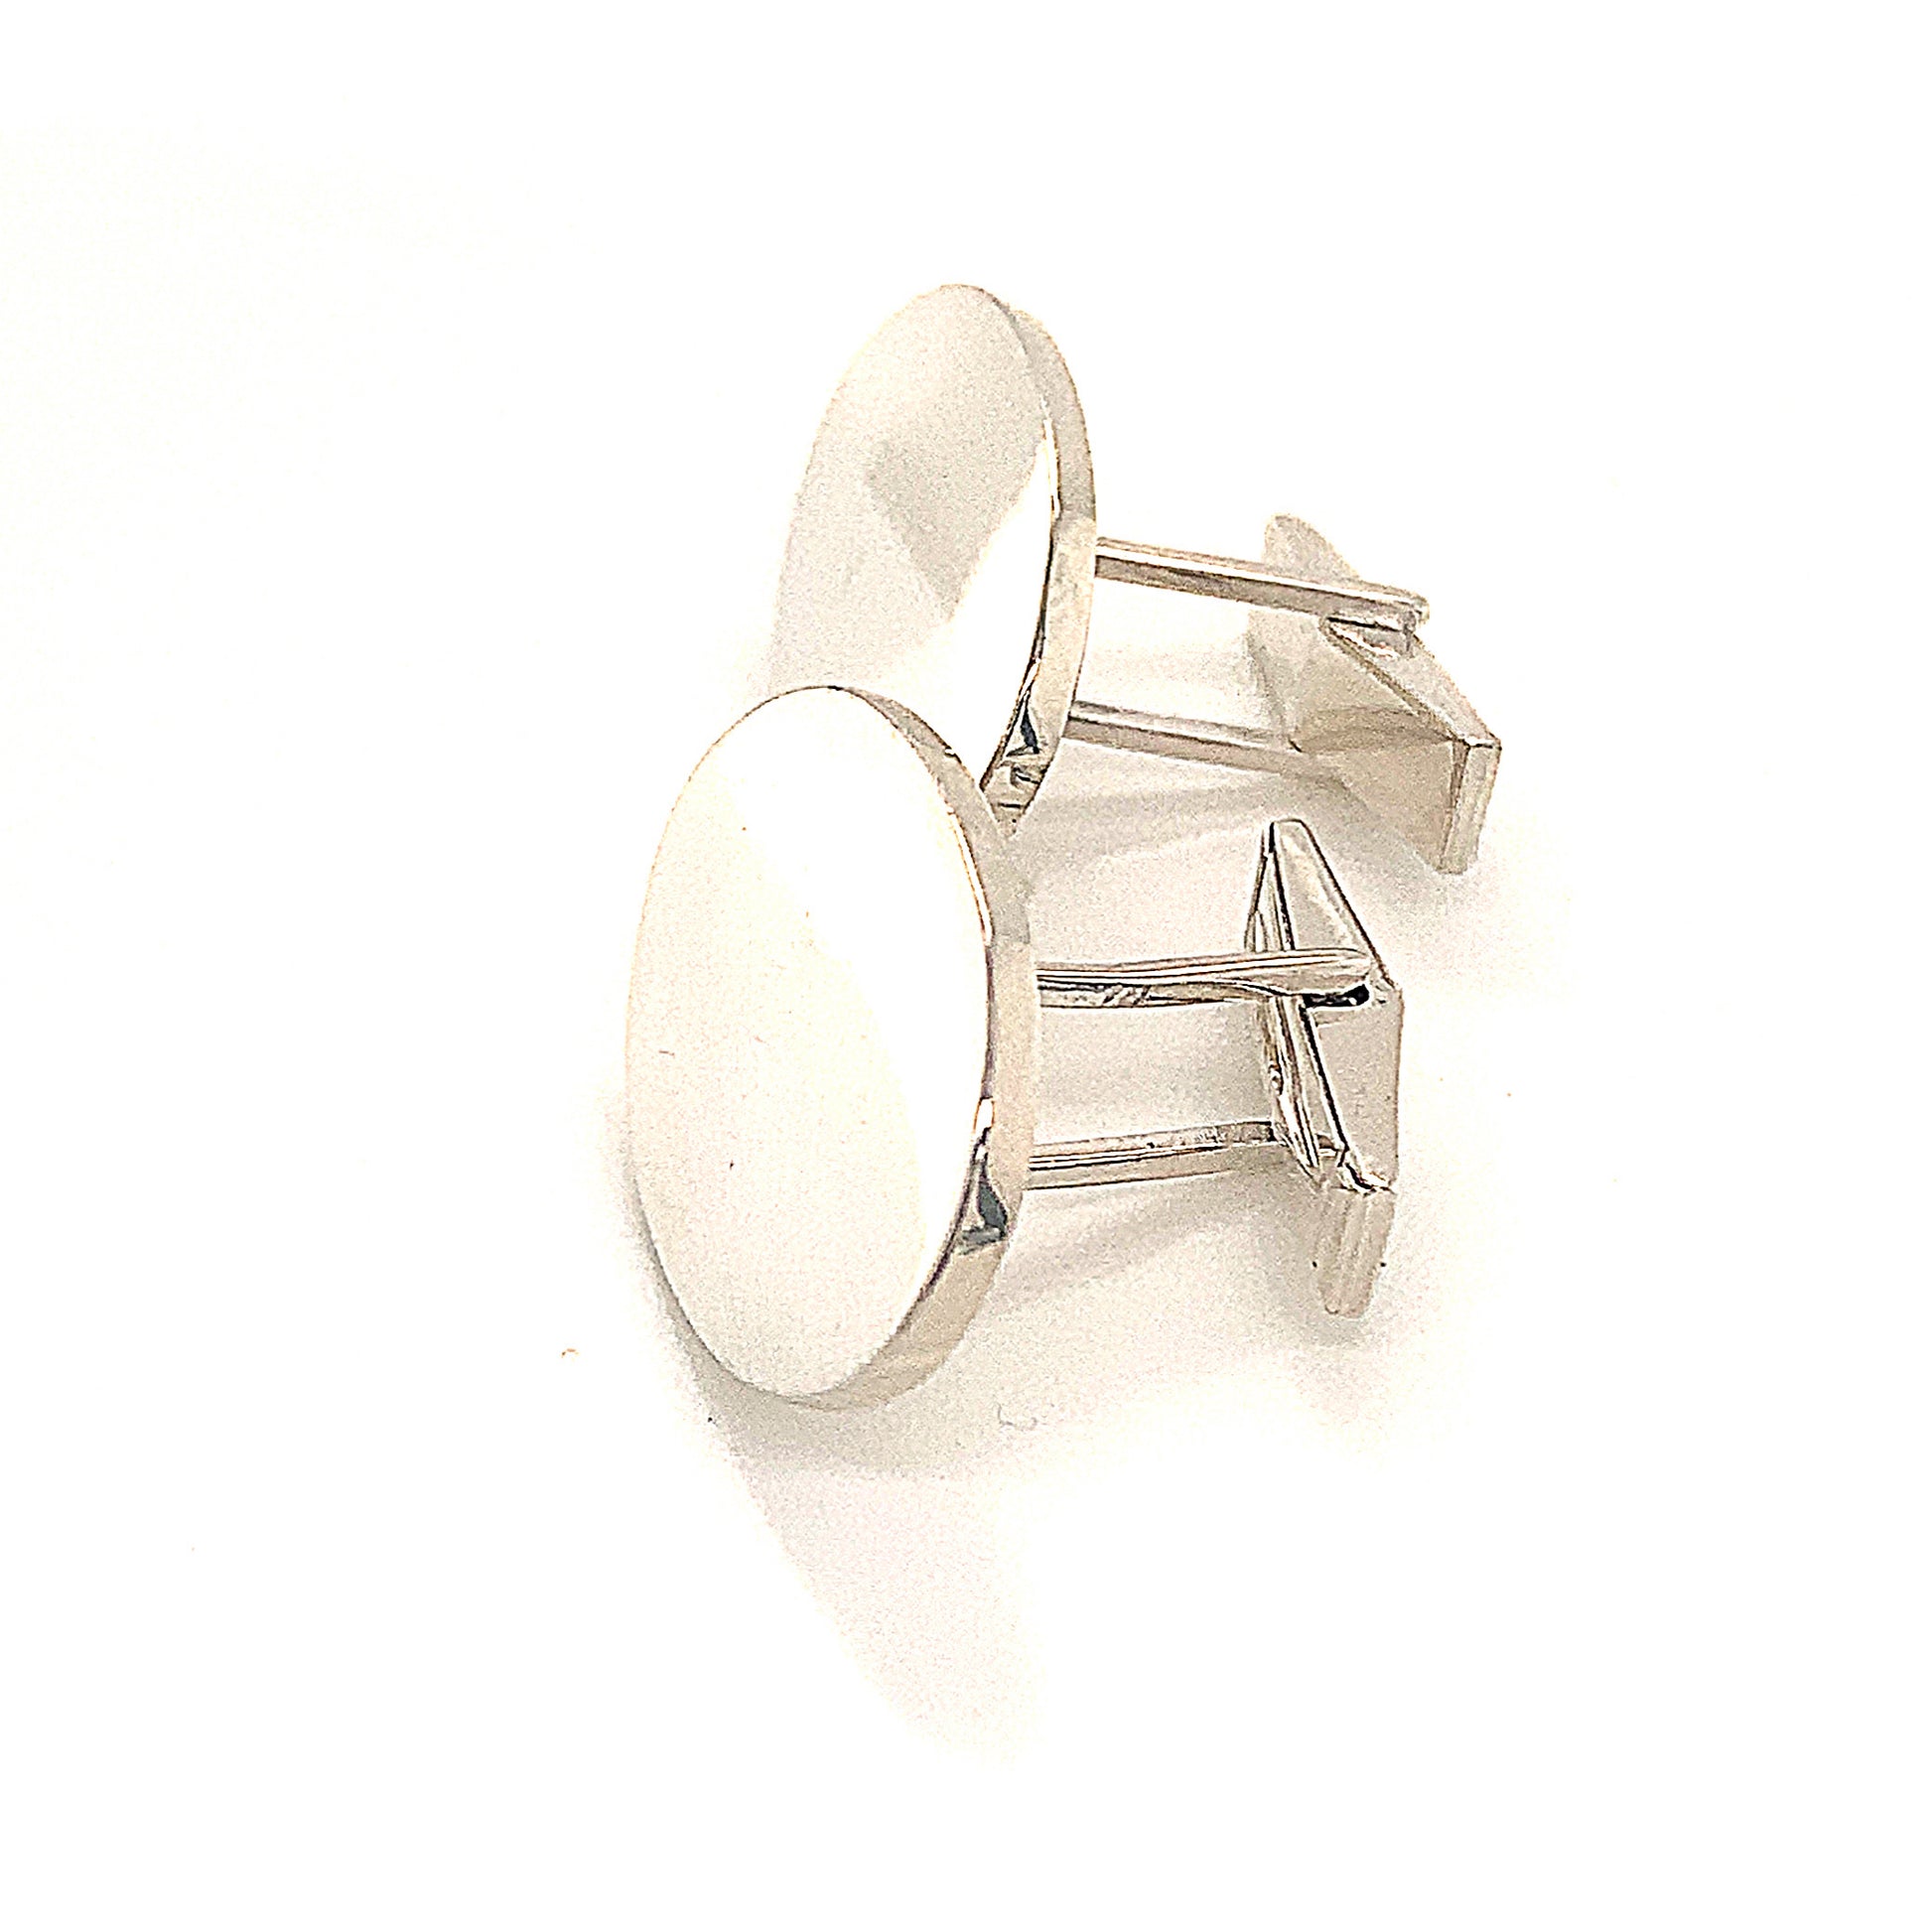 Tiffany & Co Estate Sterling Silver Cufflinks 18.4 Grams TIF113 - Certified Estate Jewelry